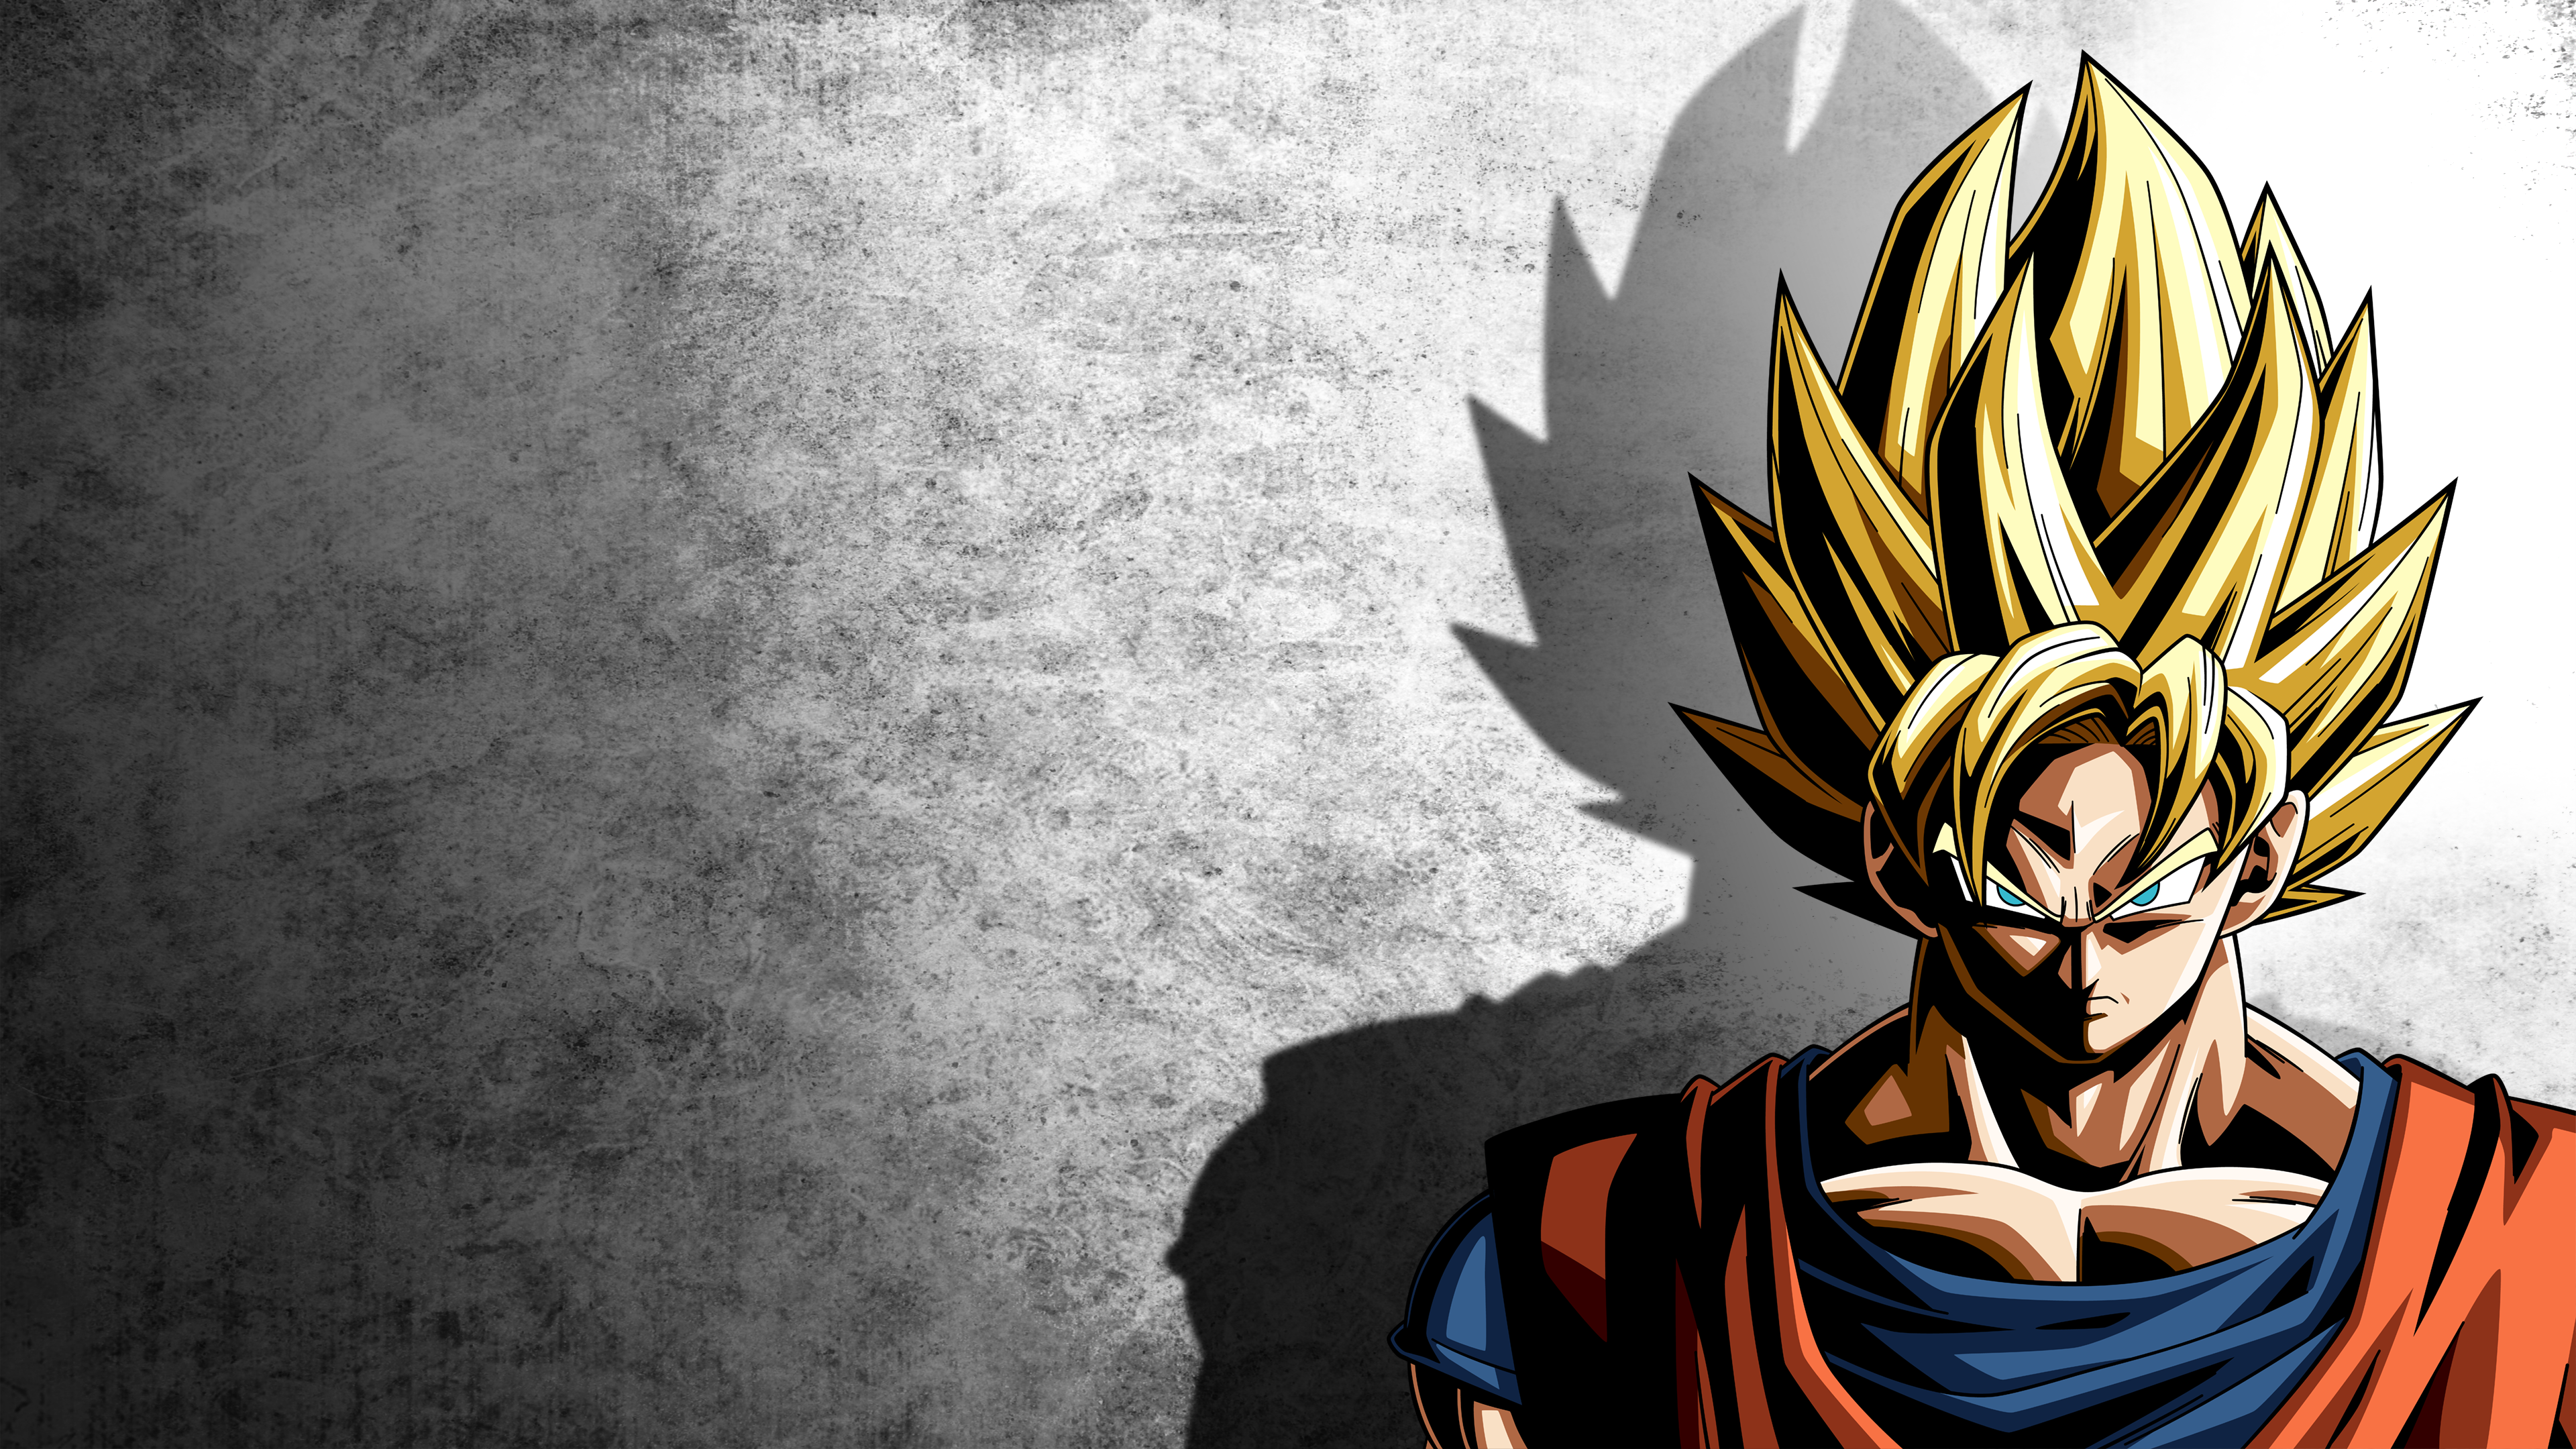 Dragon Ball Z HD Wallpaper Background Image